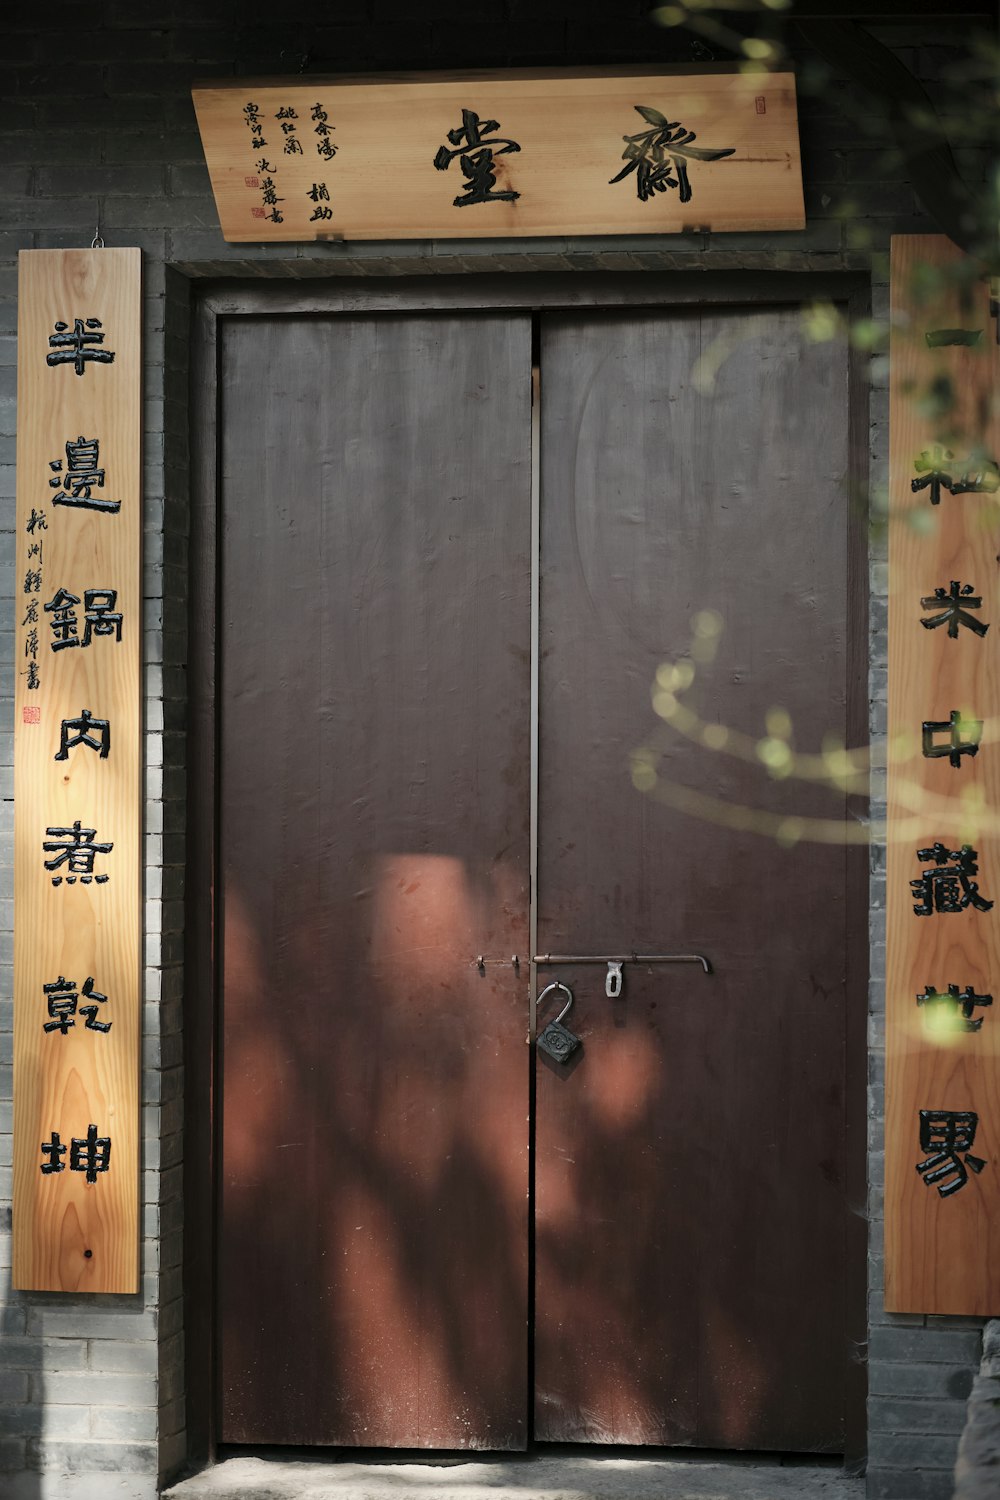 Une porte en bois avec des inscriptions asiatiques dessus